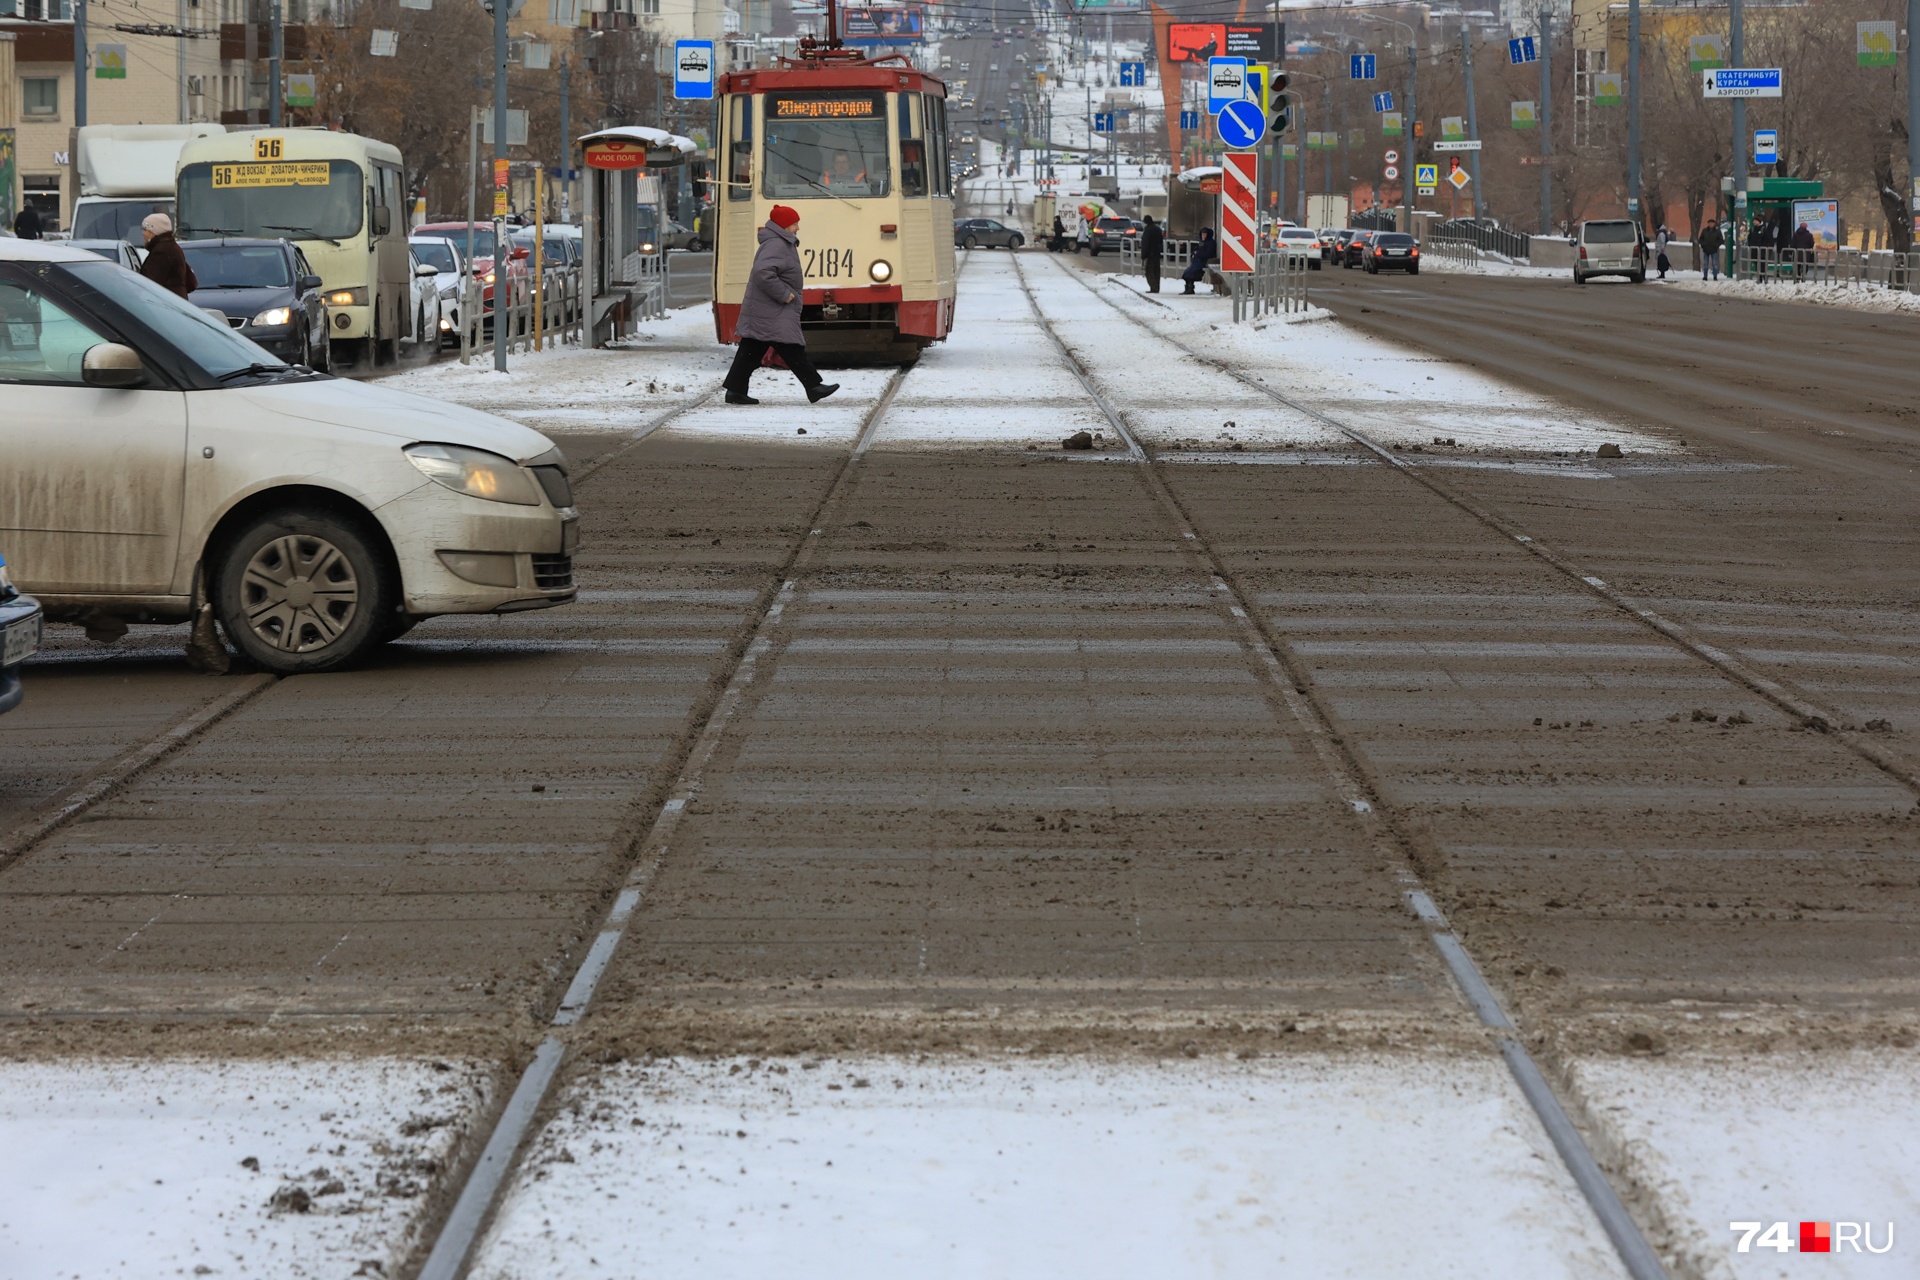 Графичные линии (не) украшают пересечение проспекта Ленина и Свердловского проспекта